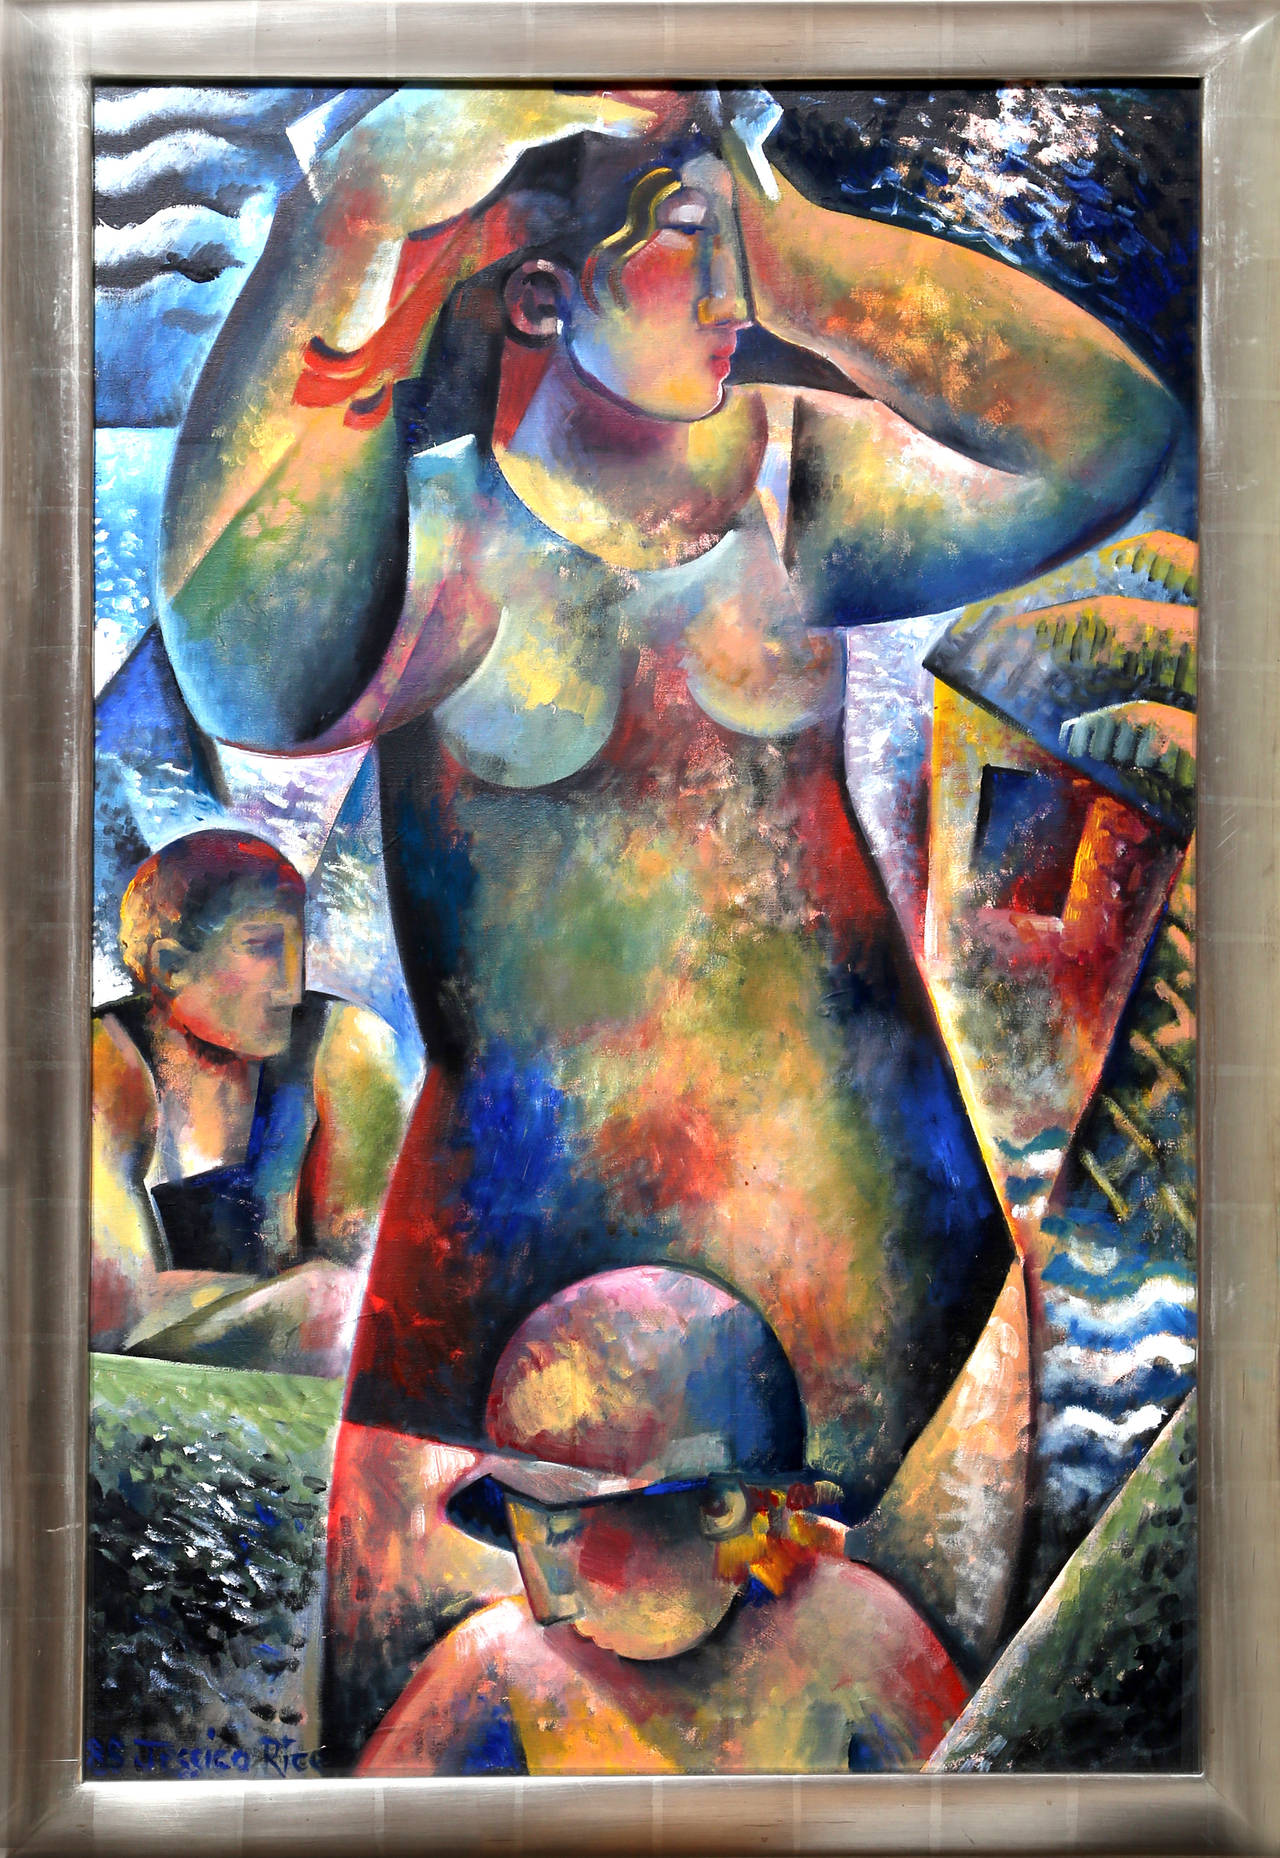 Ein Ölgemälde von Jessica Rice aus dem Jahr 1985. Eine kubistische Szene mit Figuren an einem tropischen Strand. Gerahmt in silbernem Holzrahmen. 
  
Künstlerin: Jessica Rice
Titel: Badende
Jahr: 1985
Medium: Öl auf Leinwand, signiert und datiert